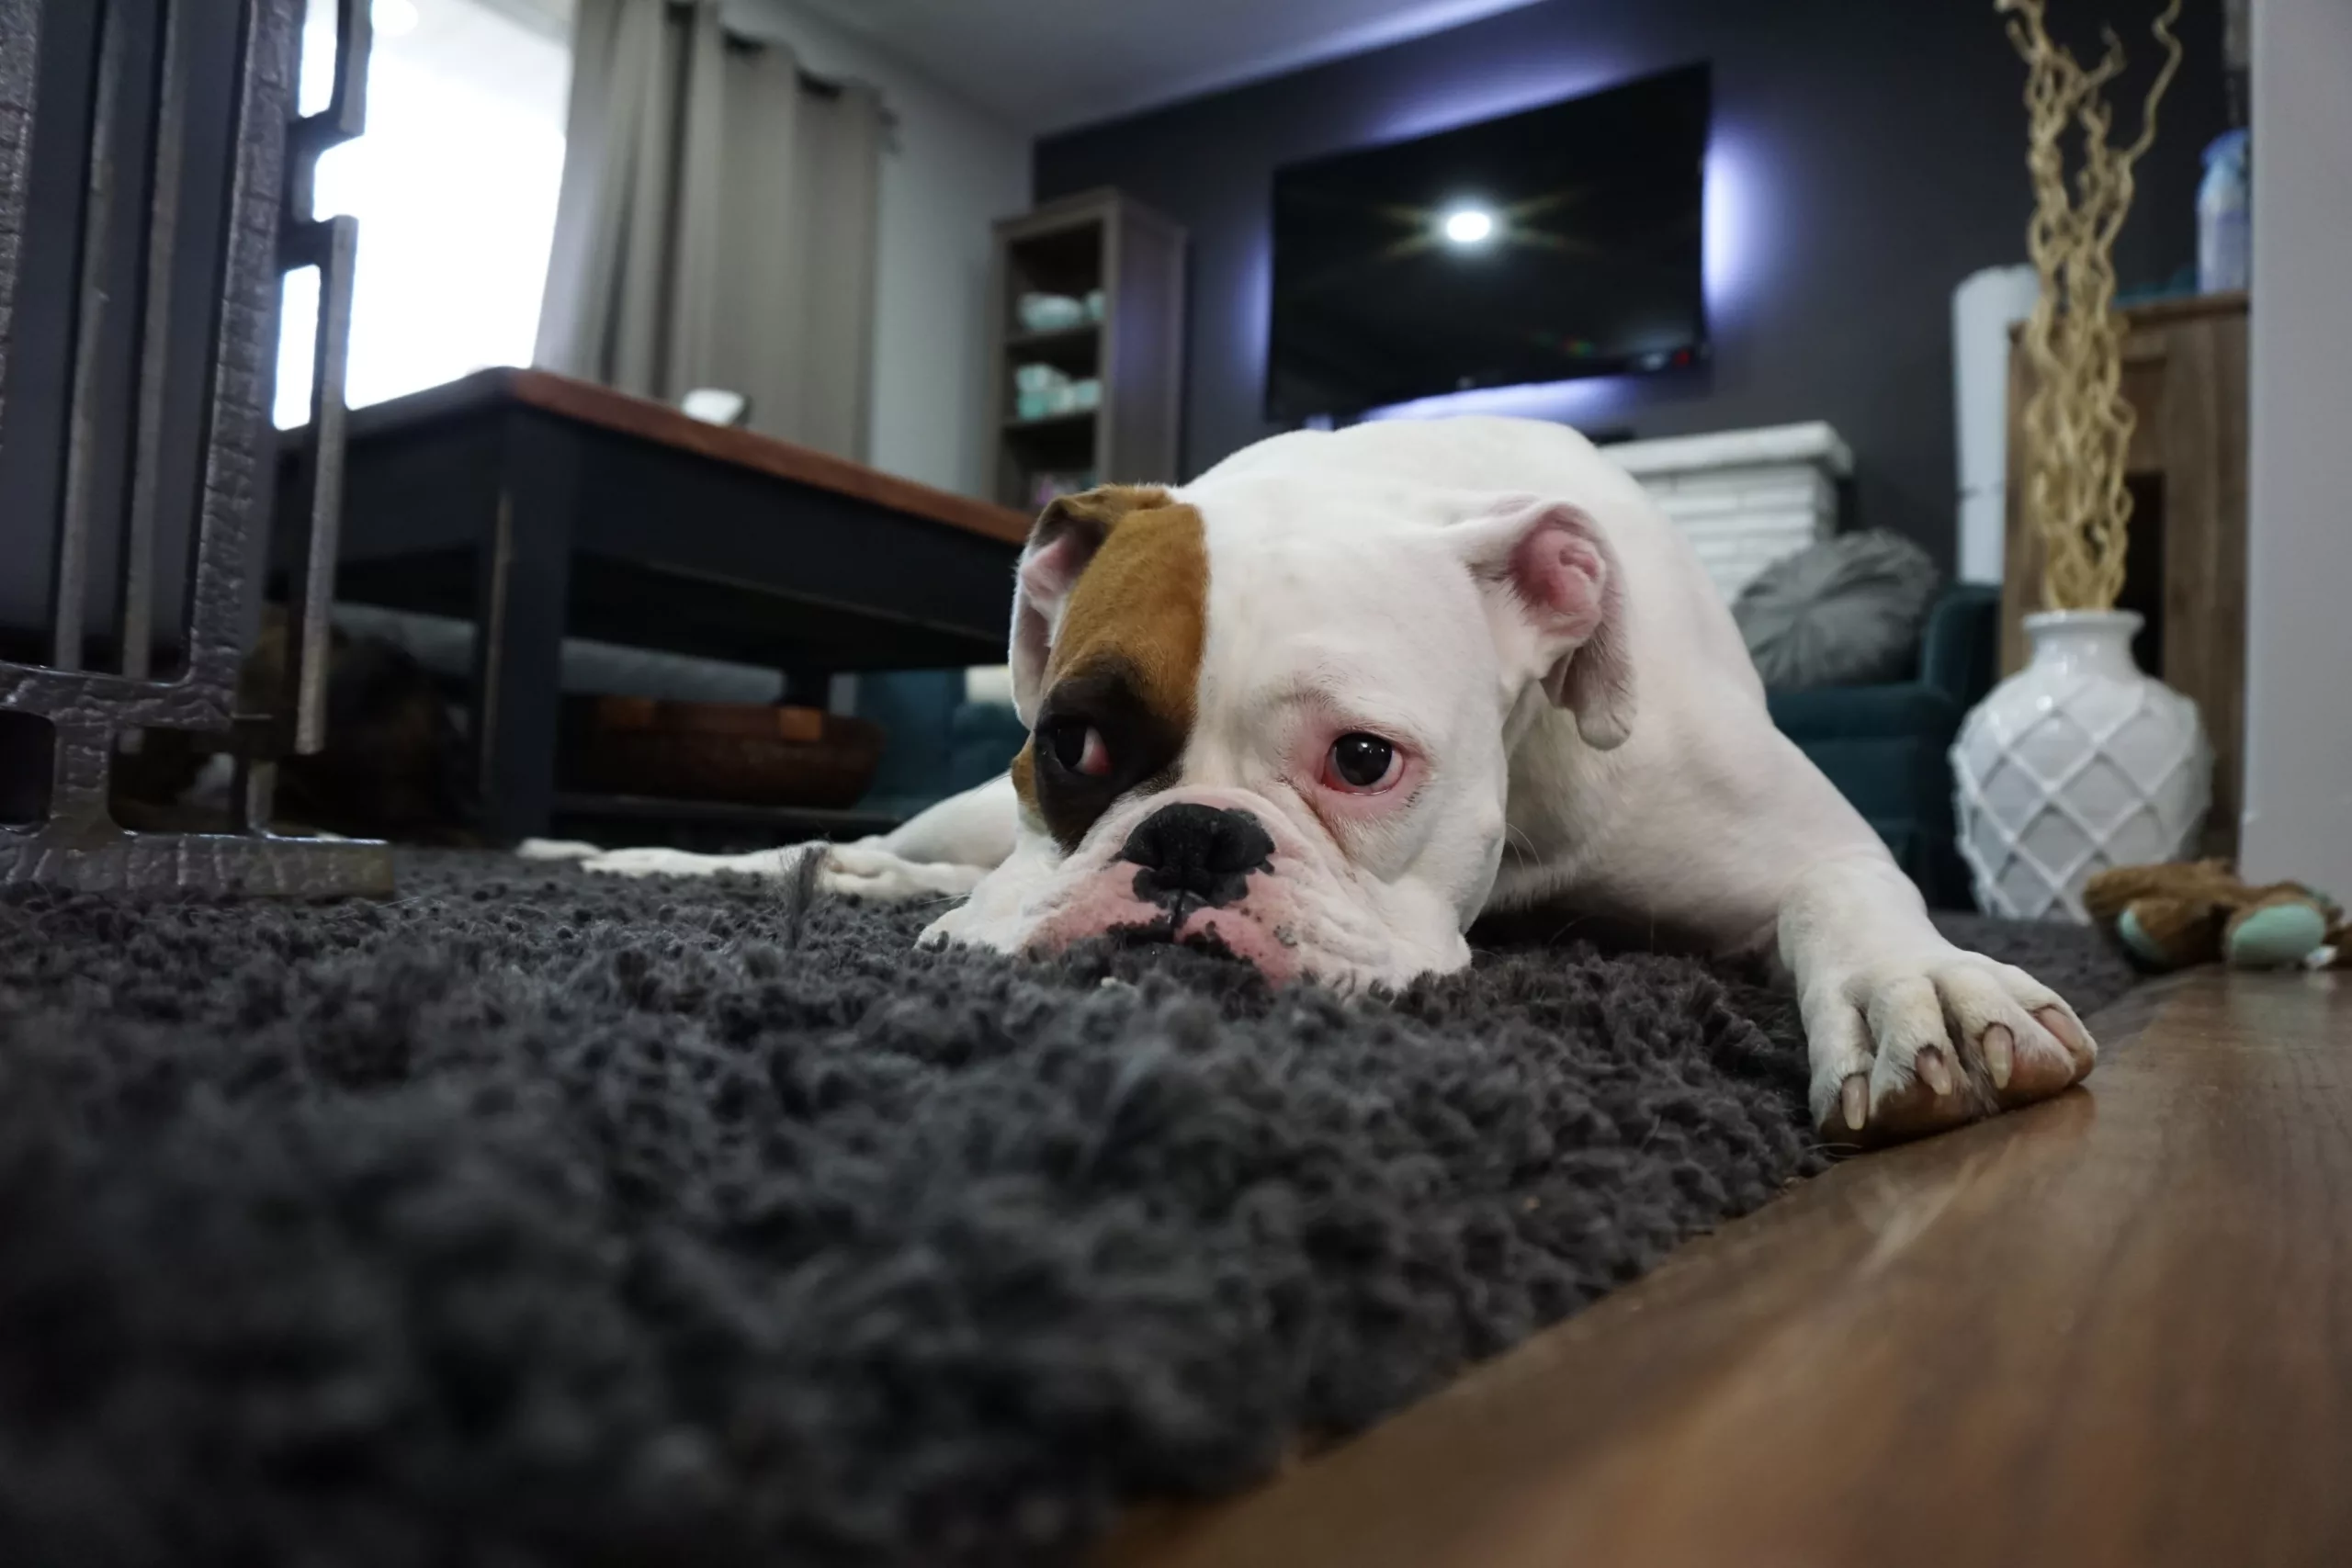 La residencia canina de lujo se caracteriza por ser ¡lo más! en hoteles para perros mientras sus familias están ausentes.